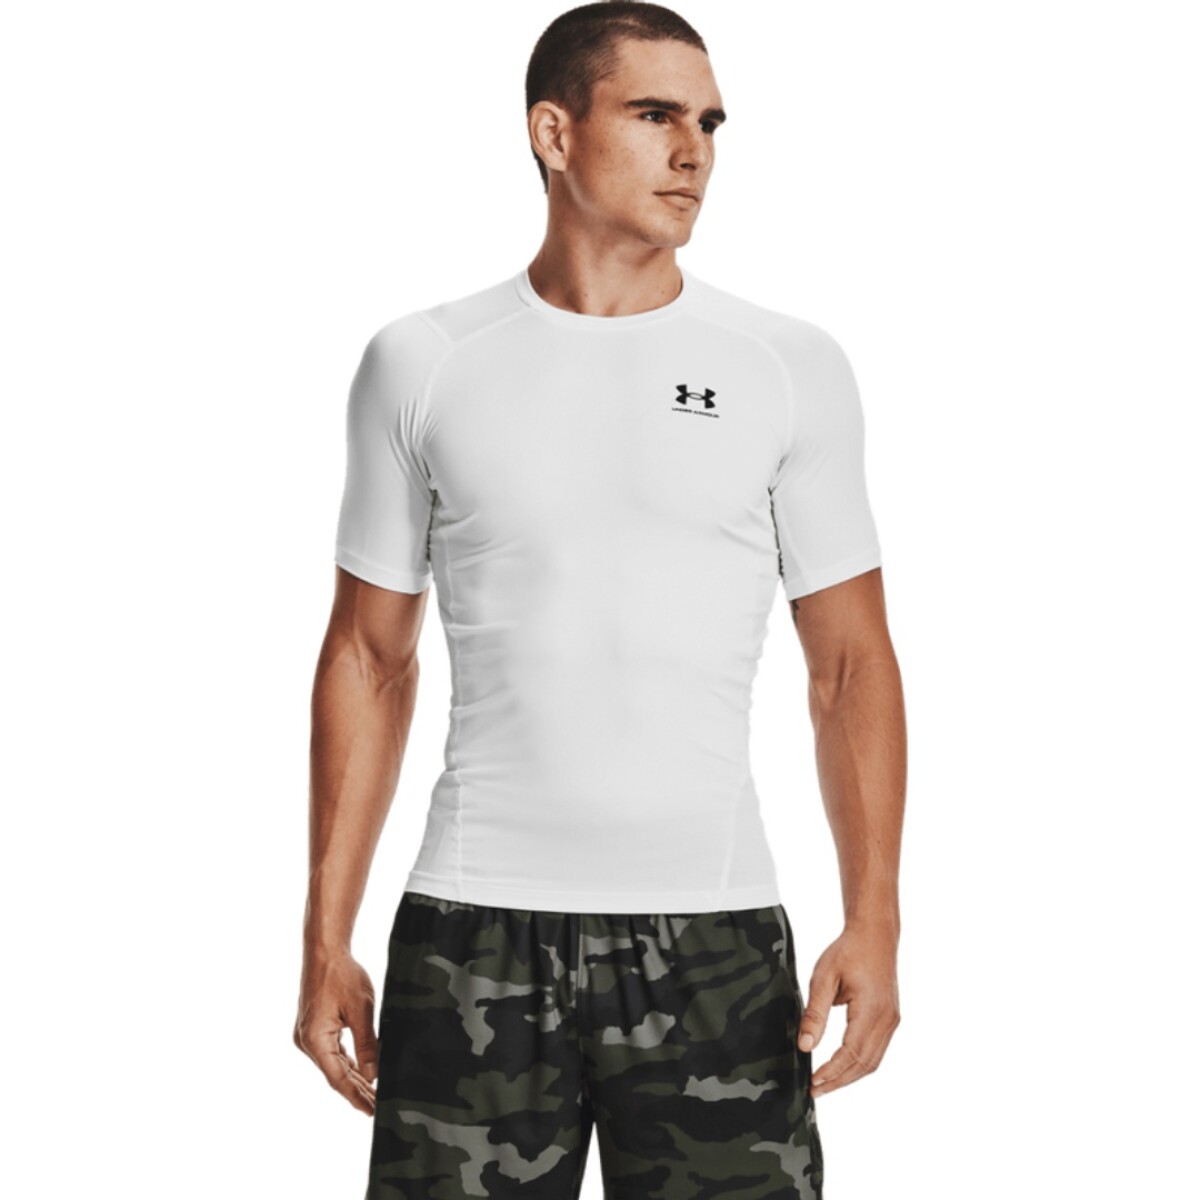 Remera Under Armour Hombre Team Issue - S/C — Menpi, camiseta